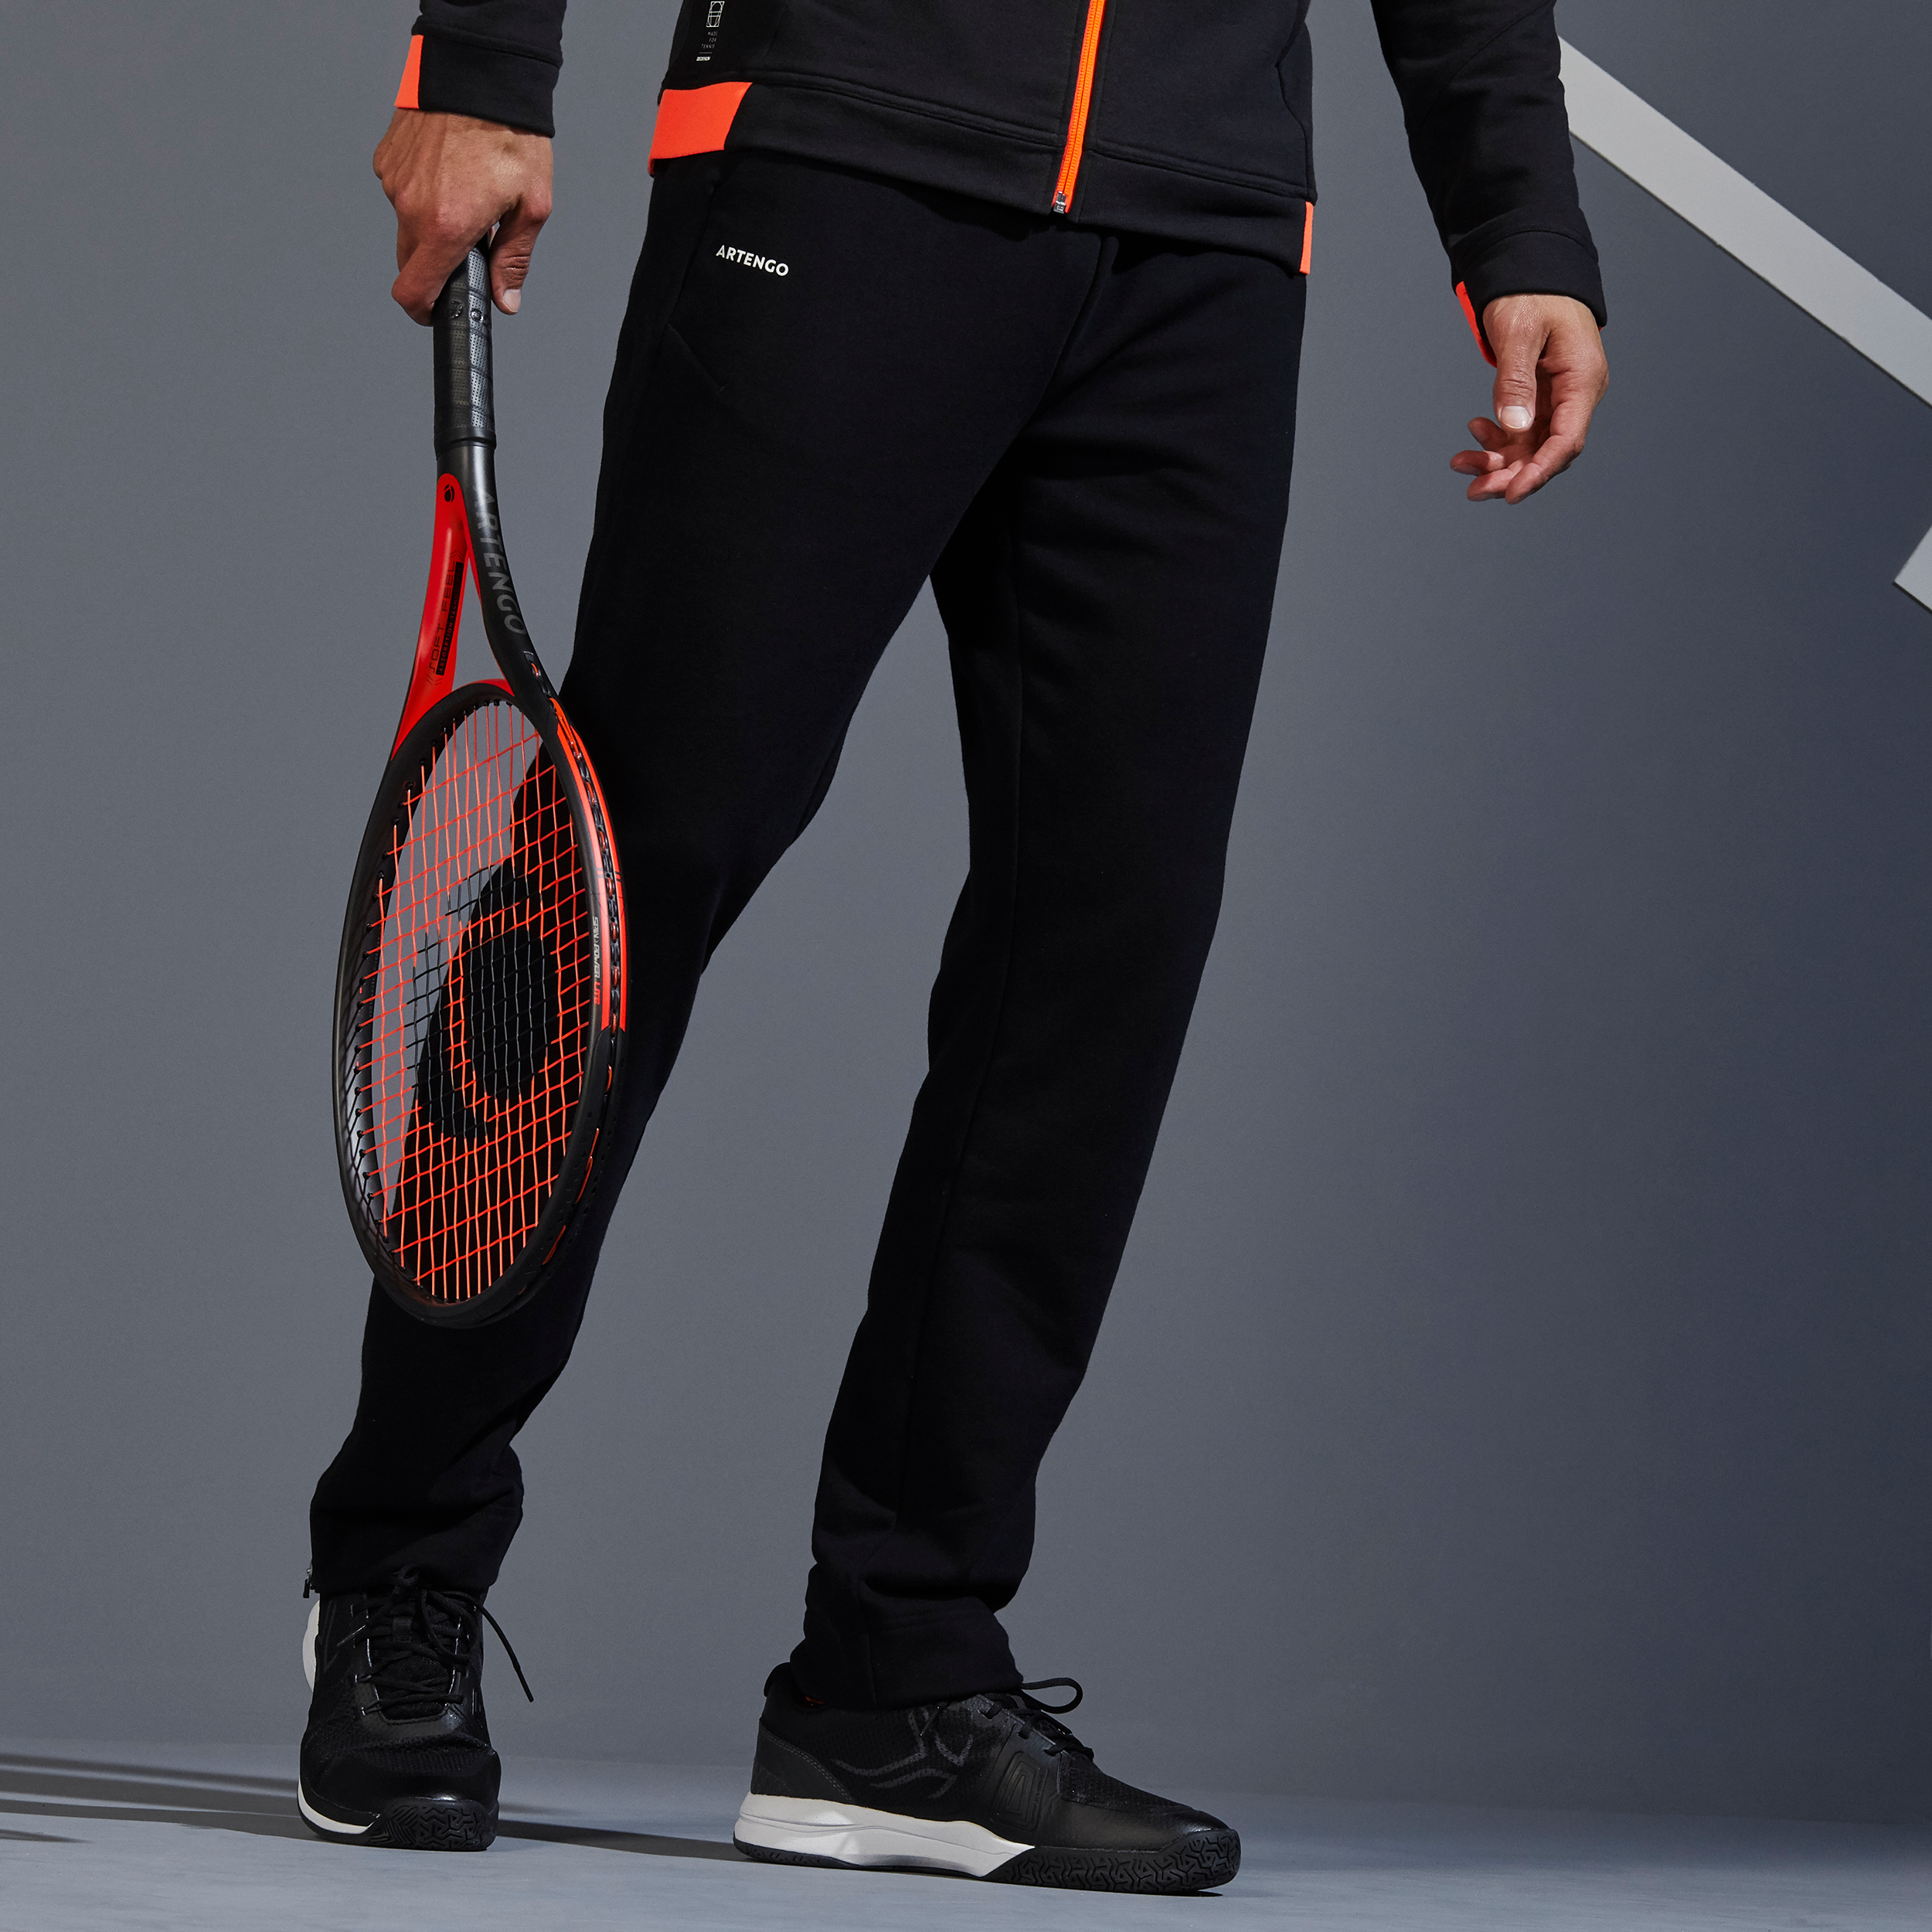 Pantalon de Tennis Homme - Soft noir pour les clubs et